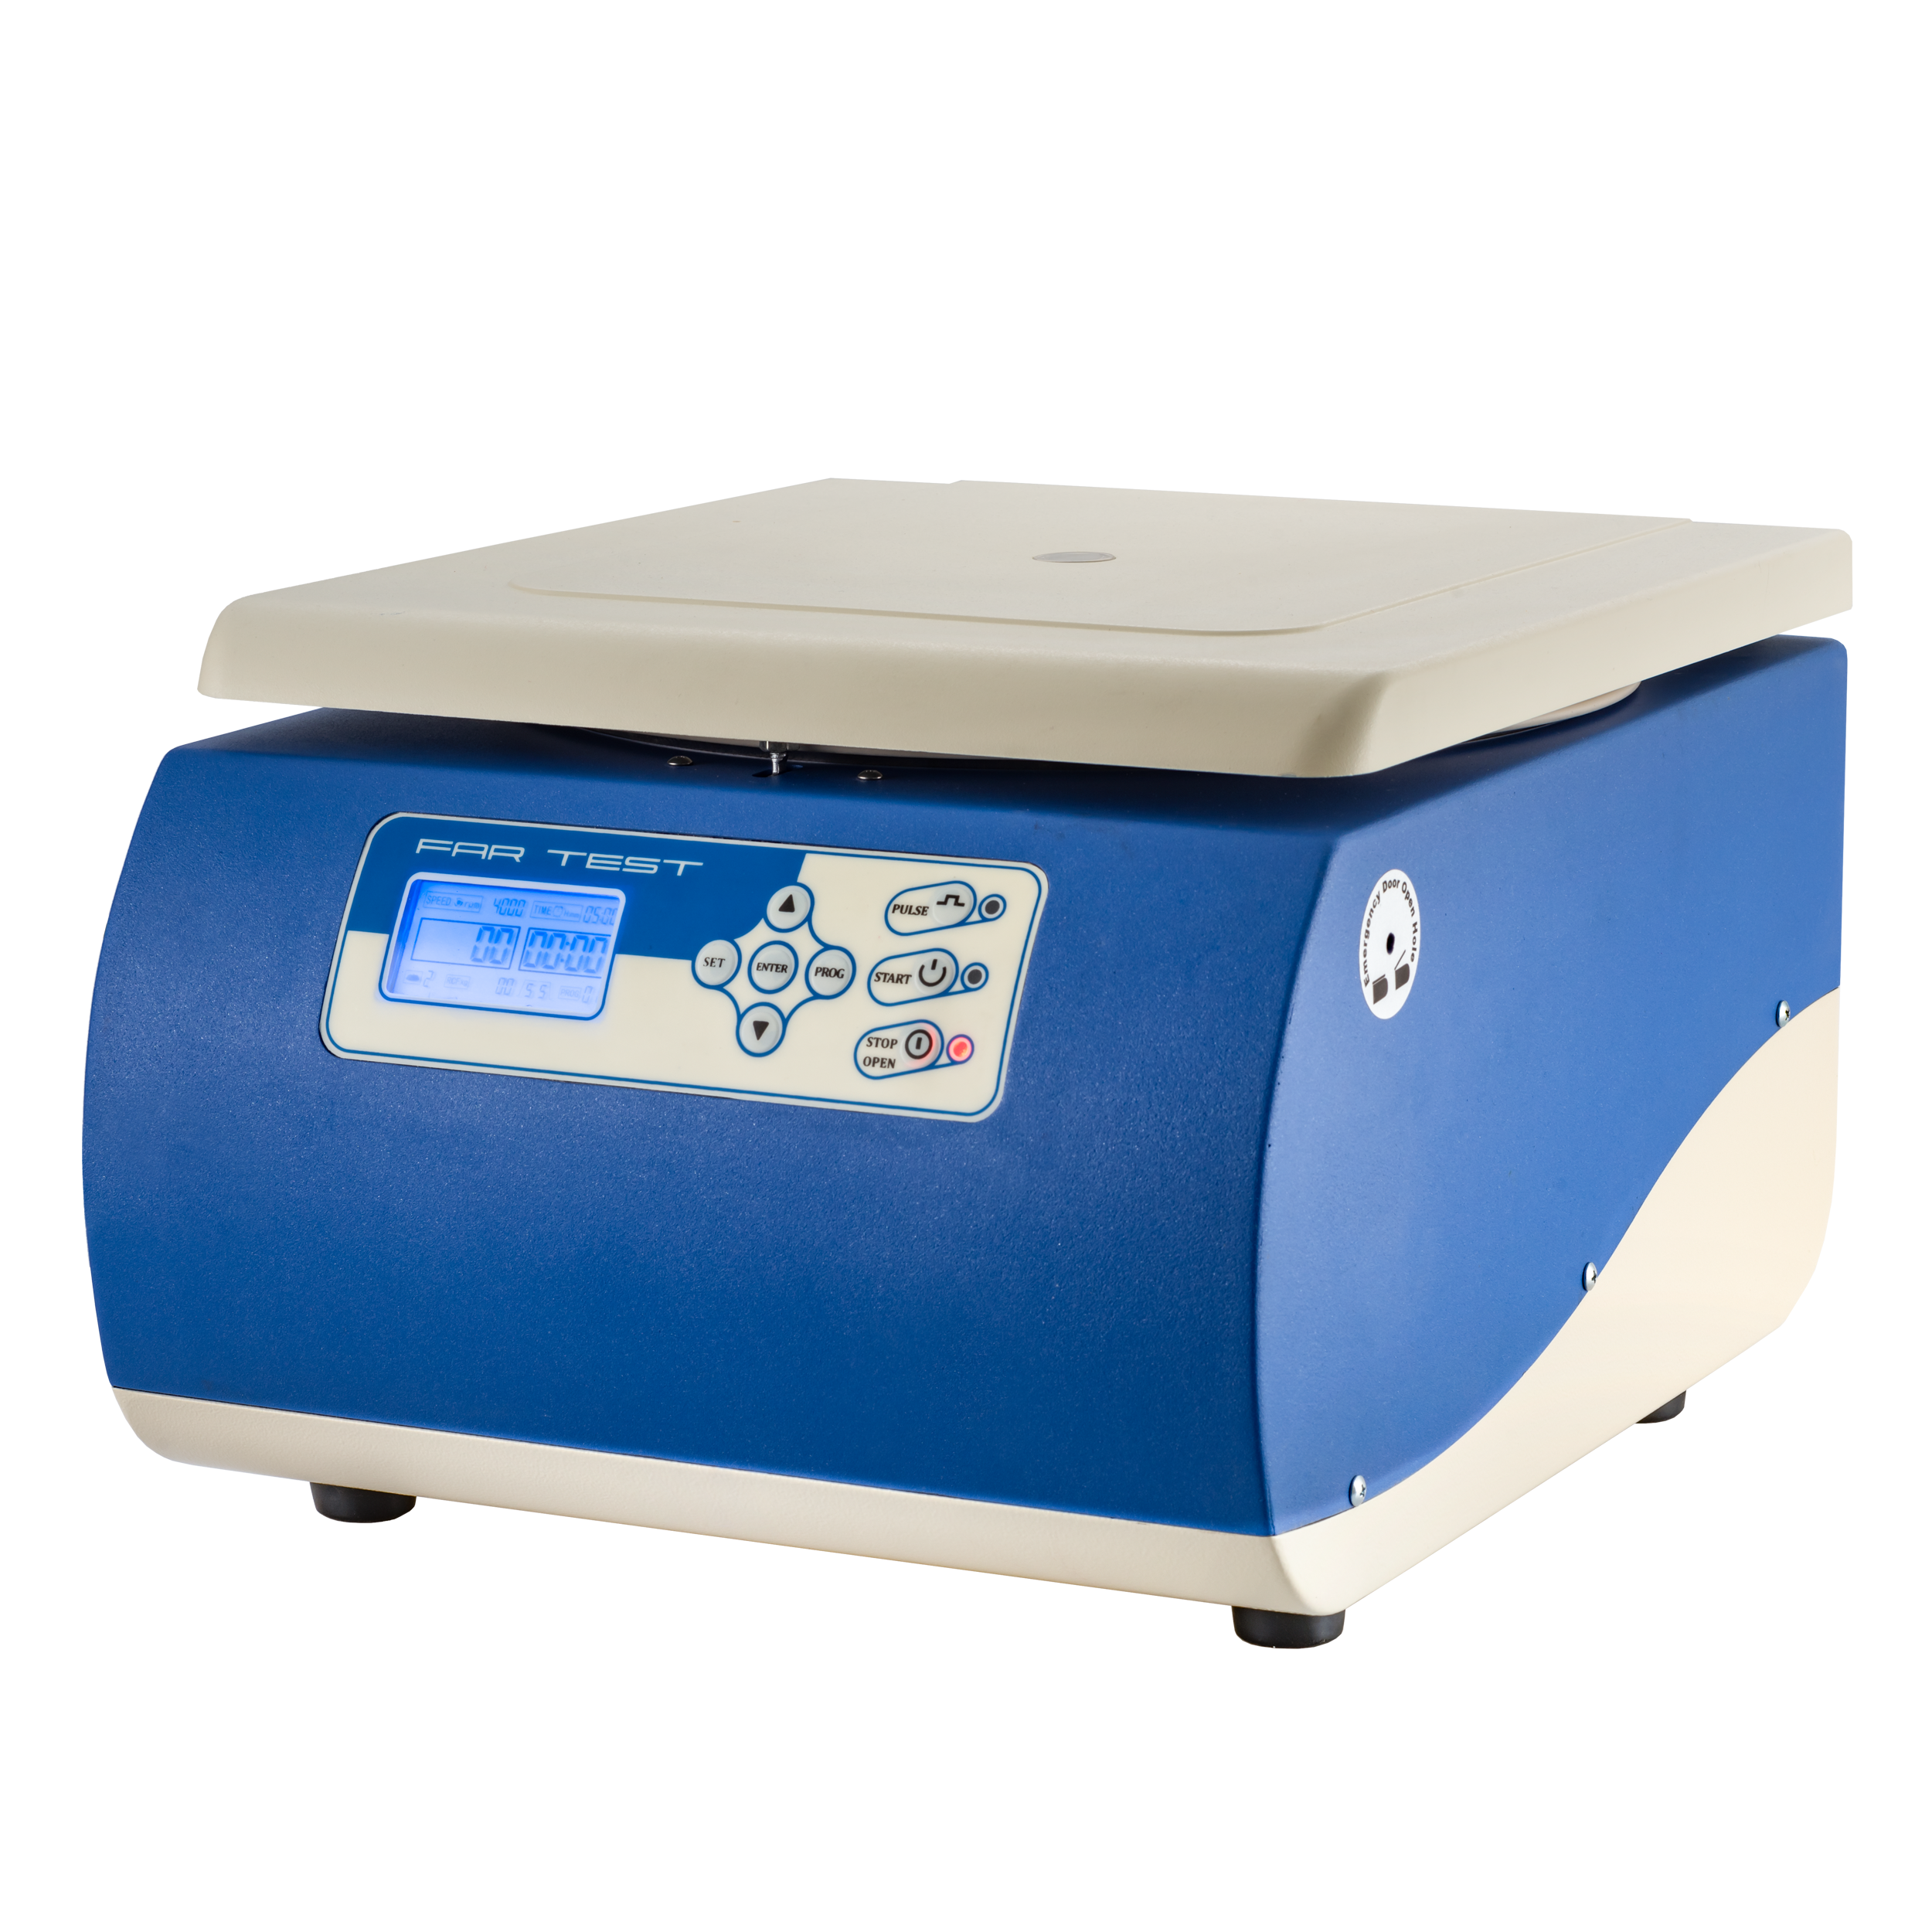 میکرو سانتریفیوژ دیجیتال 6000 دور - Bench top low speed centrifuge VS6000 F - Fartest - دستگاه - دستگاه ها و ملزومات آزمایشگاهی - فرزانه آرمان